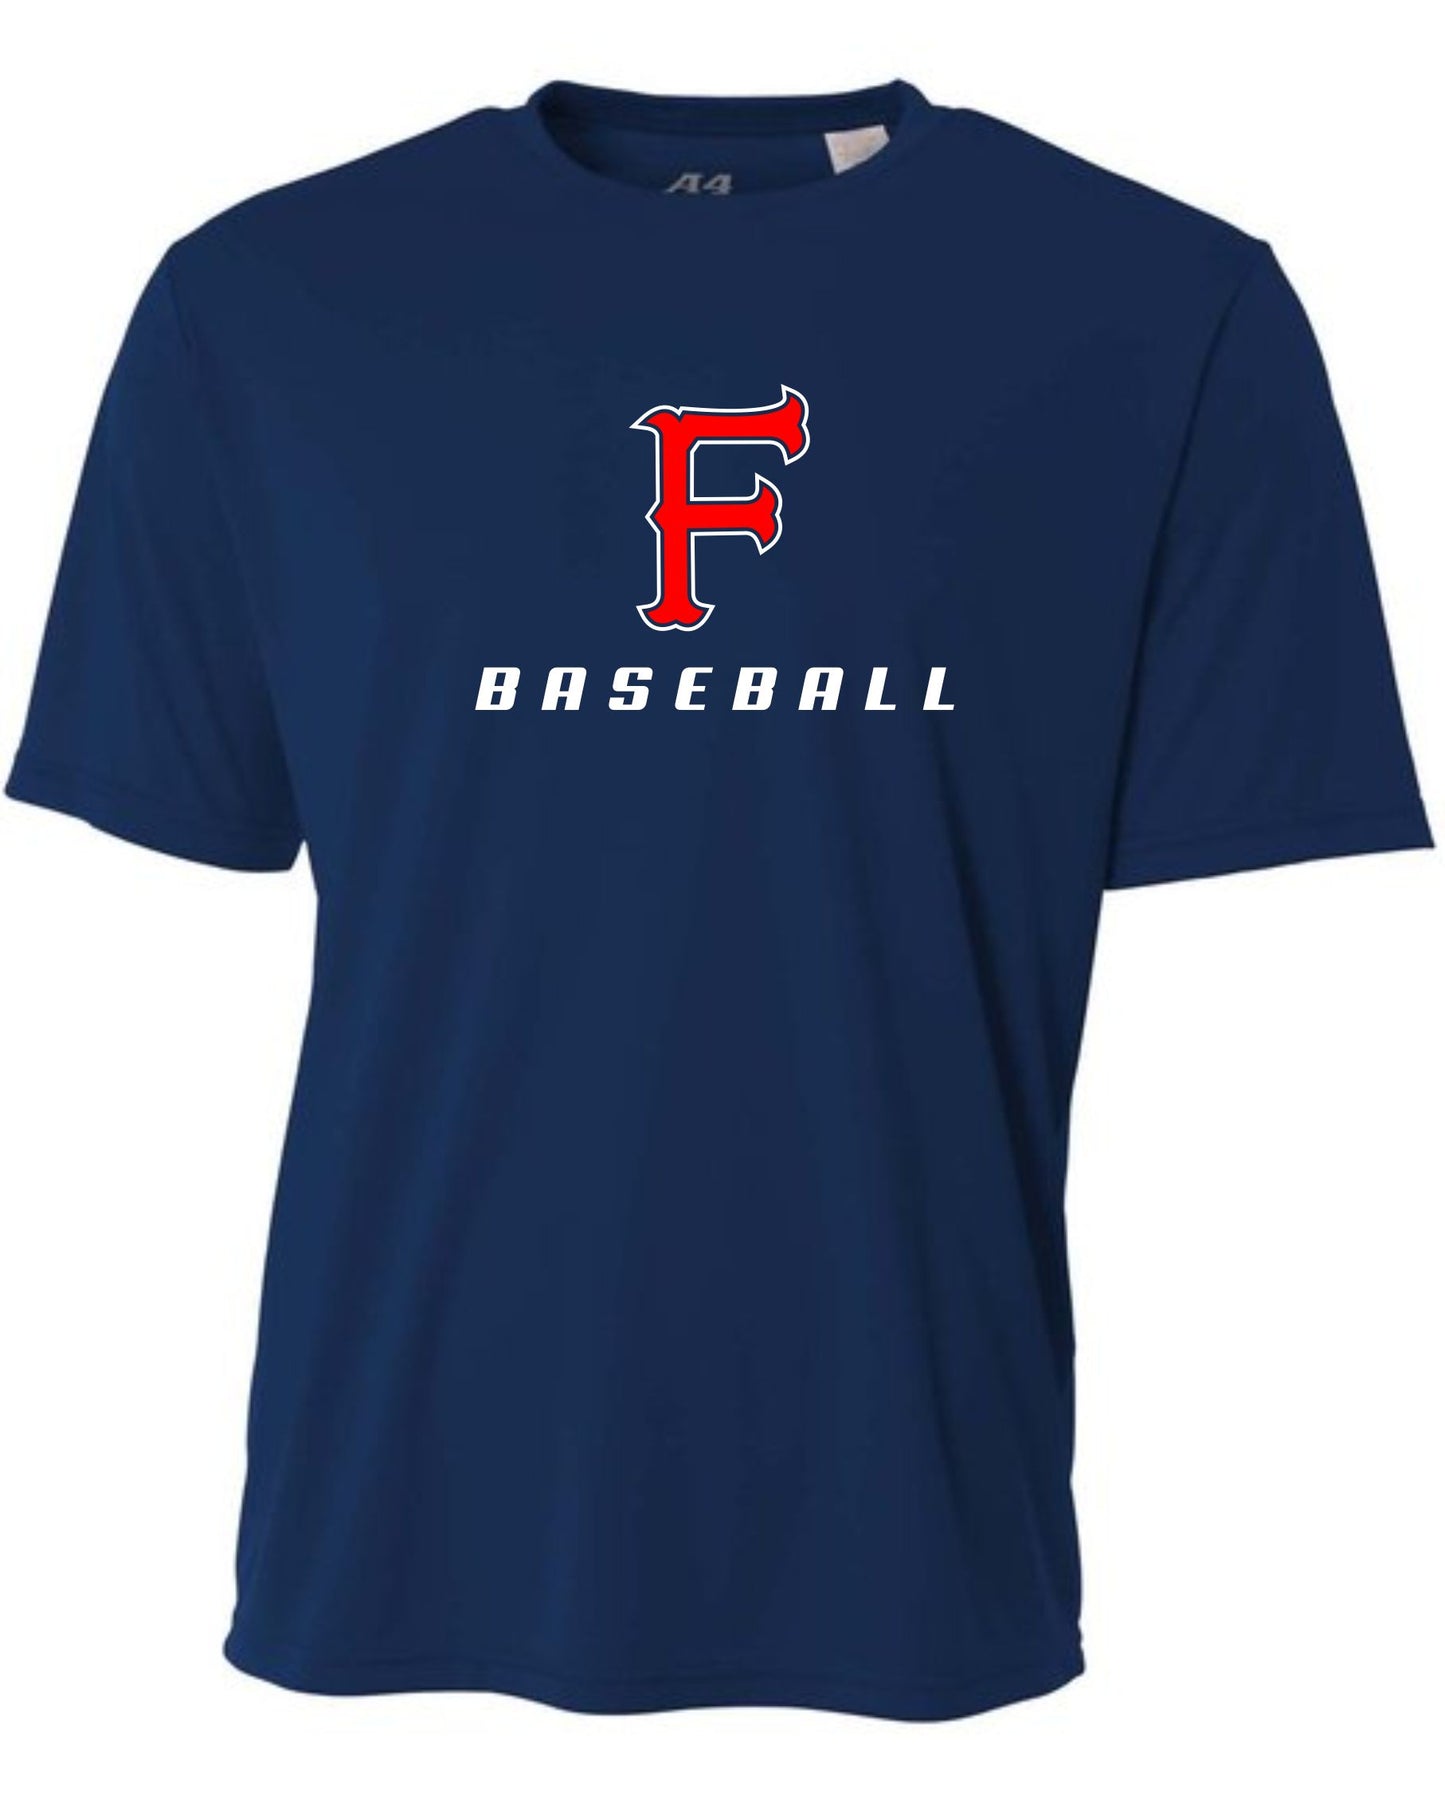 Firebaugh Baseball Dri Fit T-Shirt - Navy